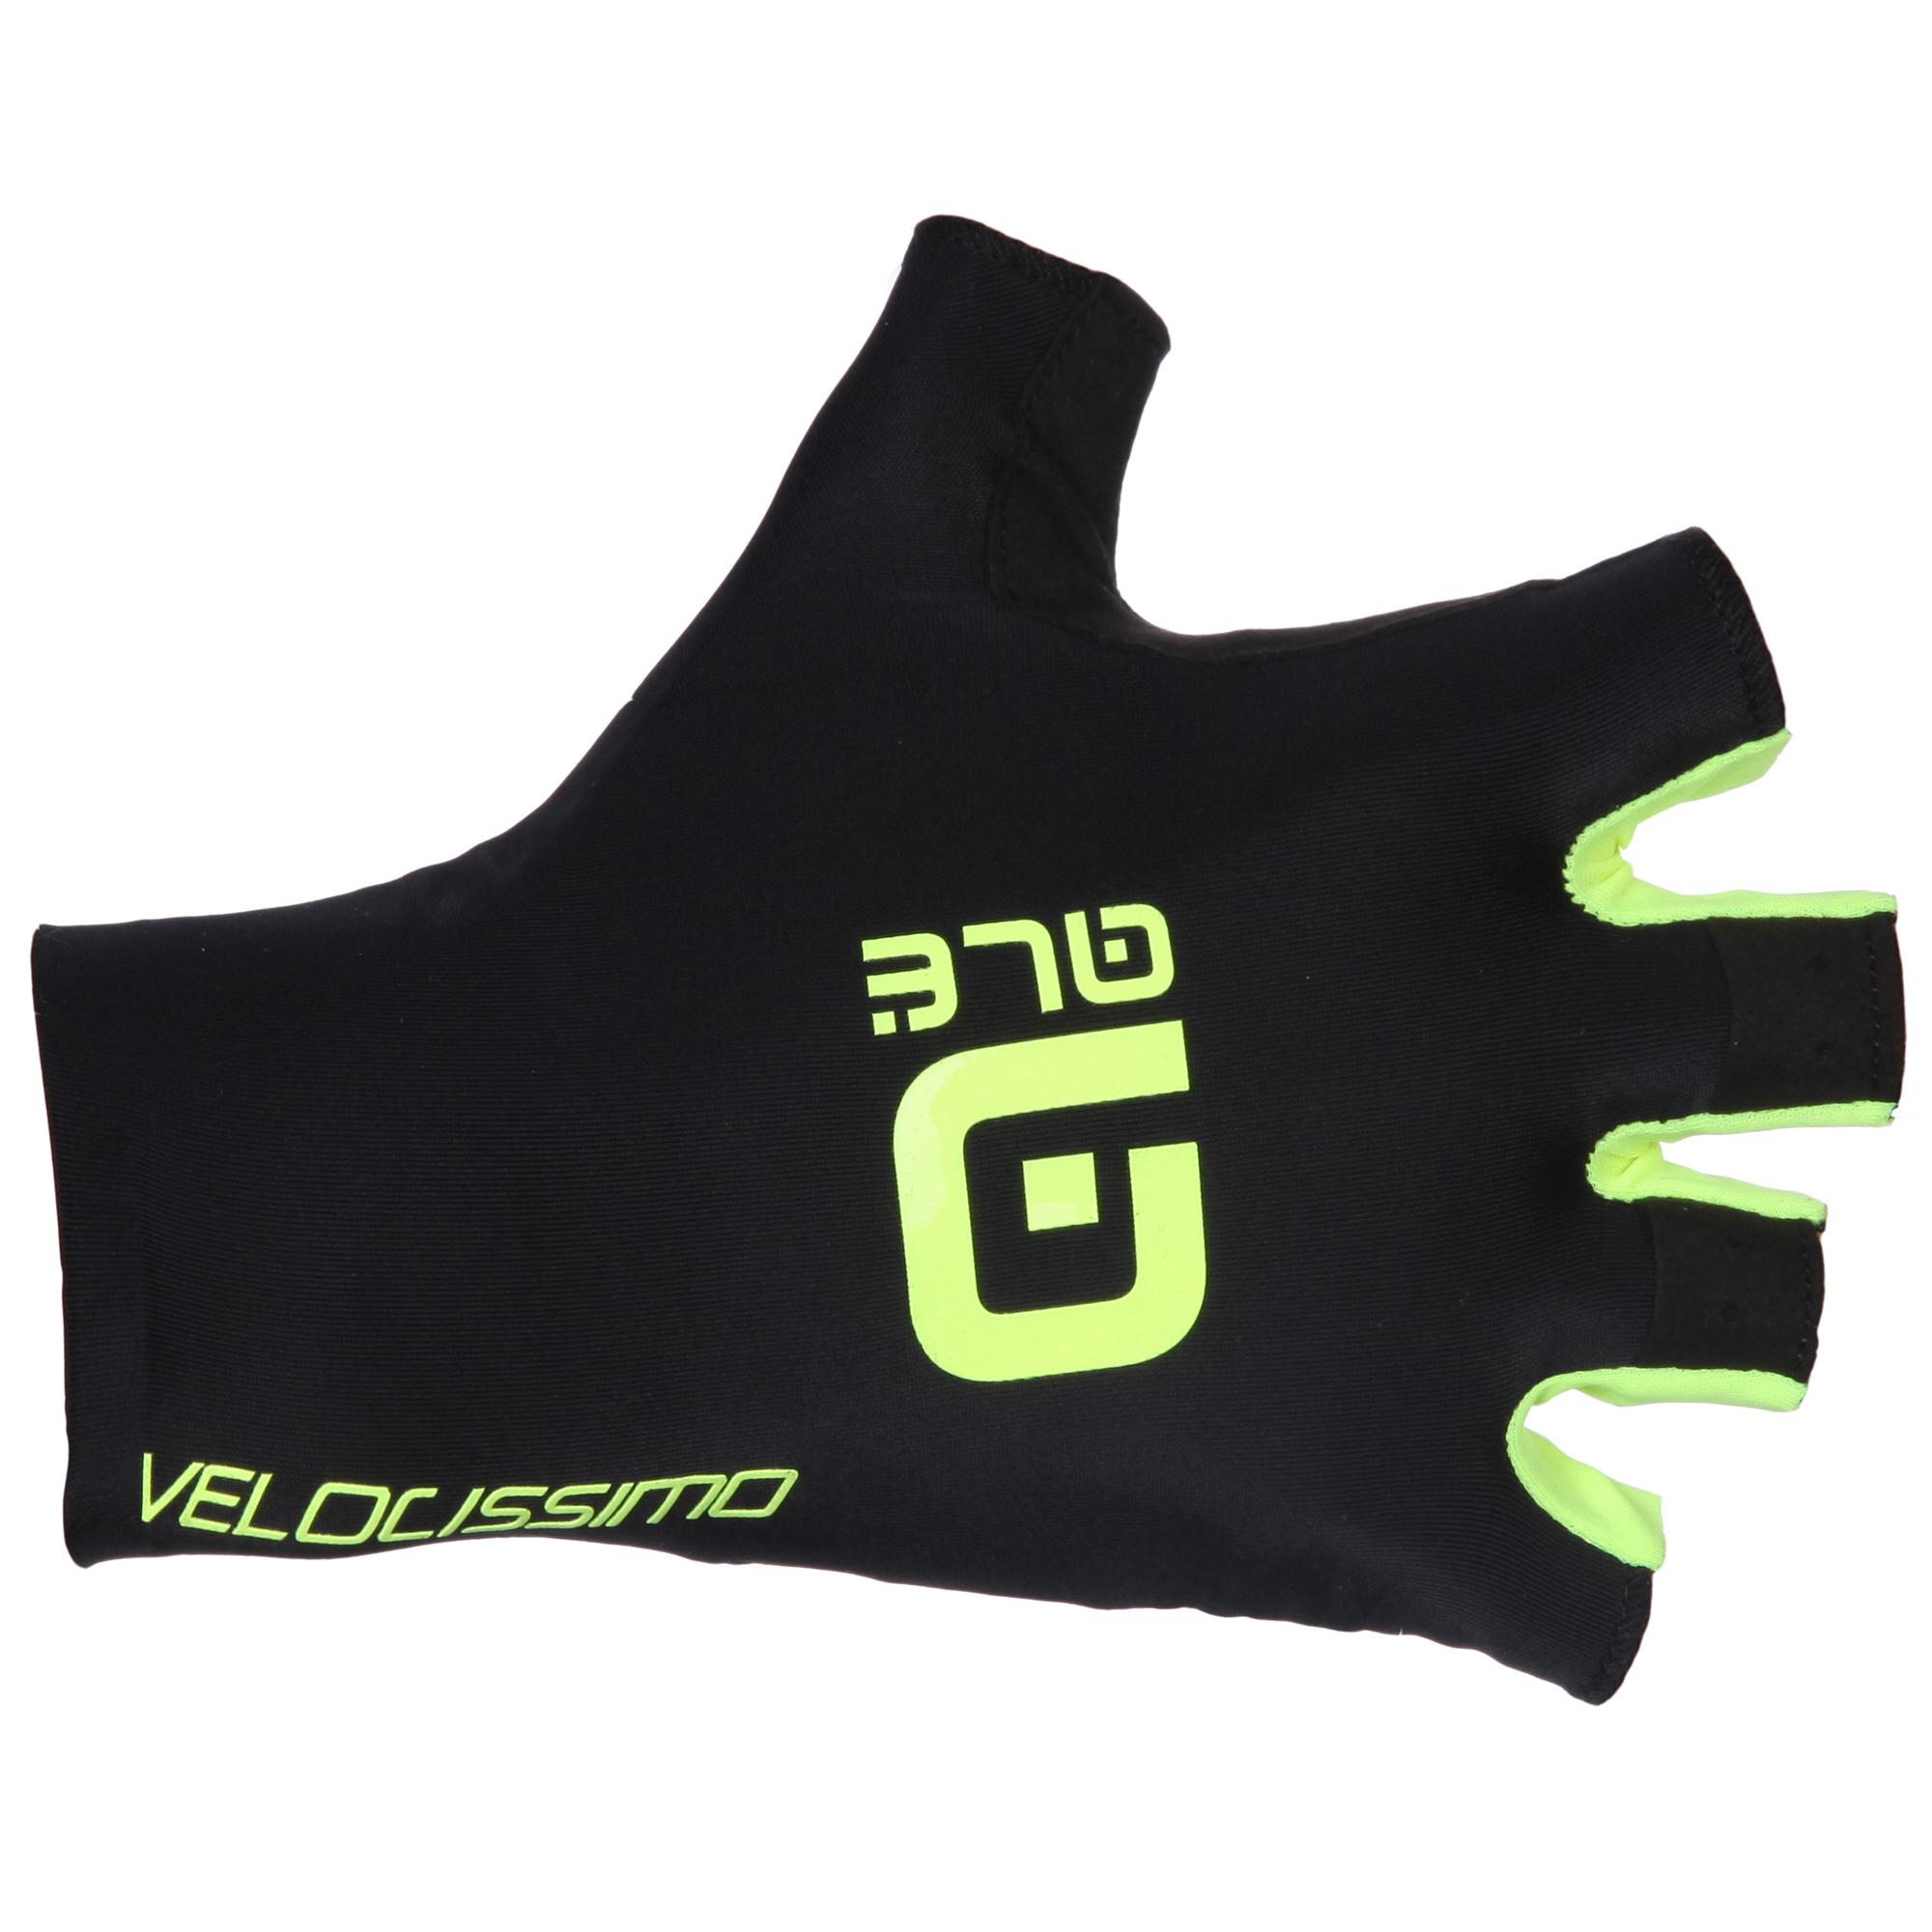 Al Crono Velocissimo Gloves - Black/yellow Fluorescent